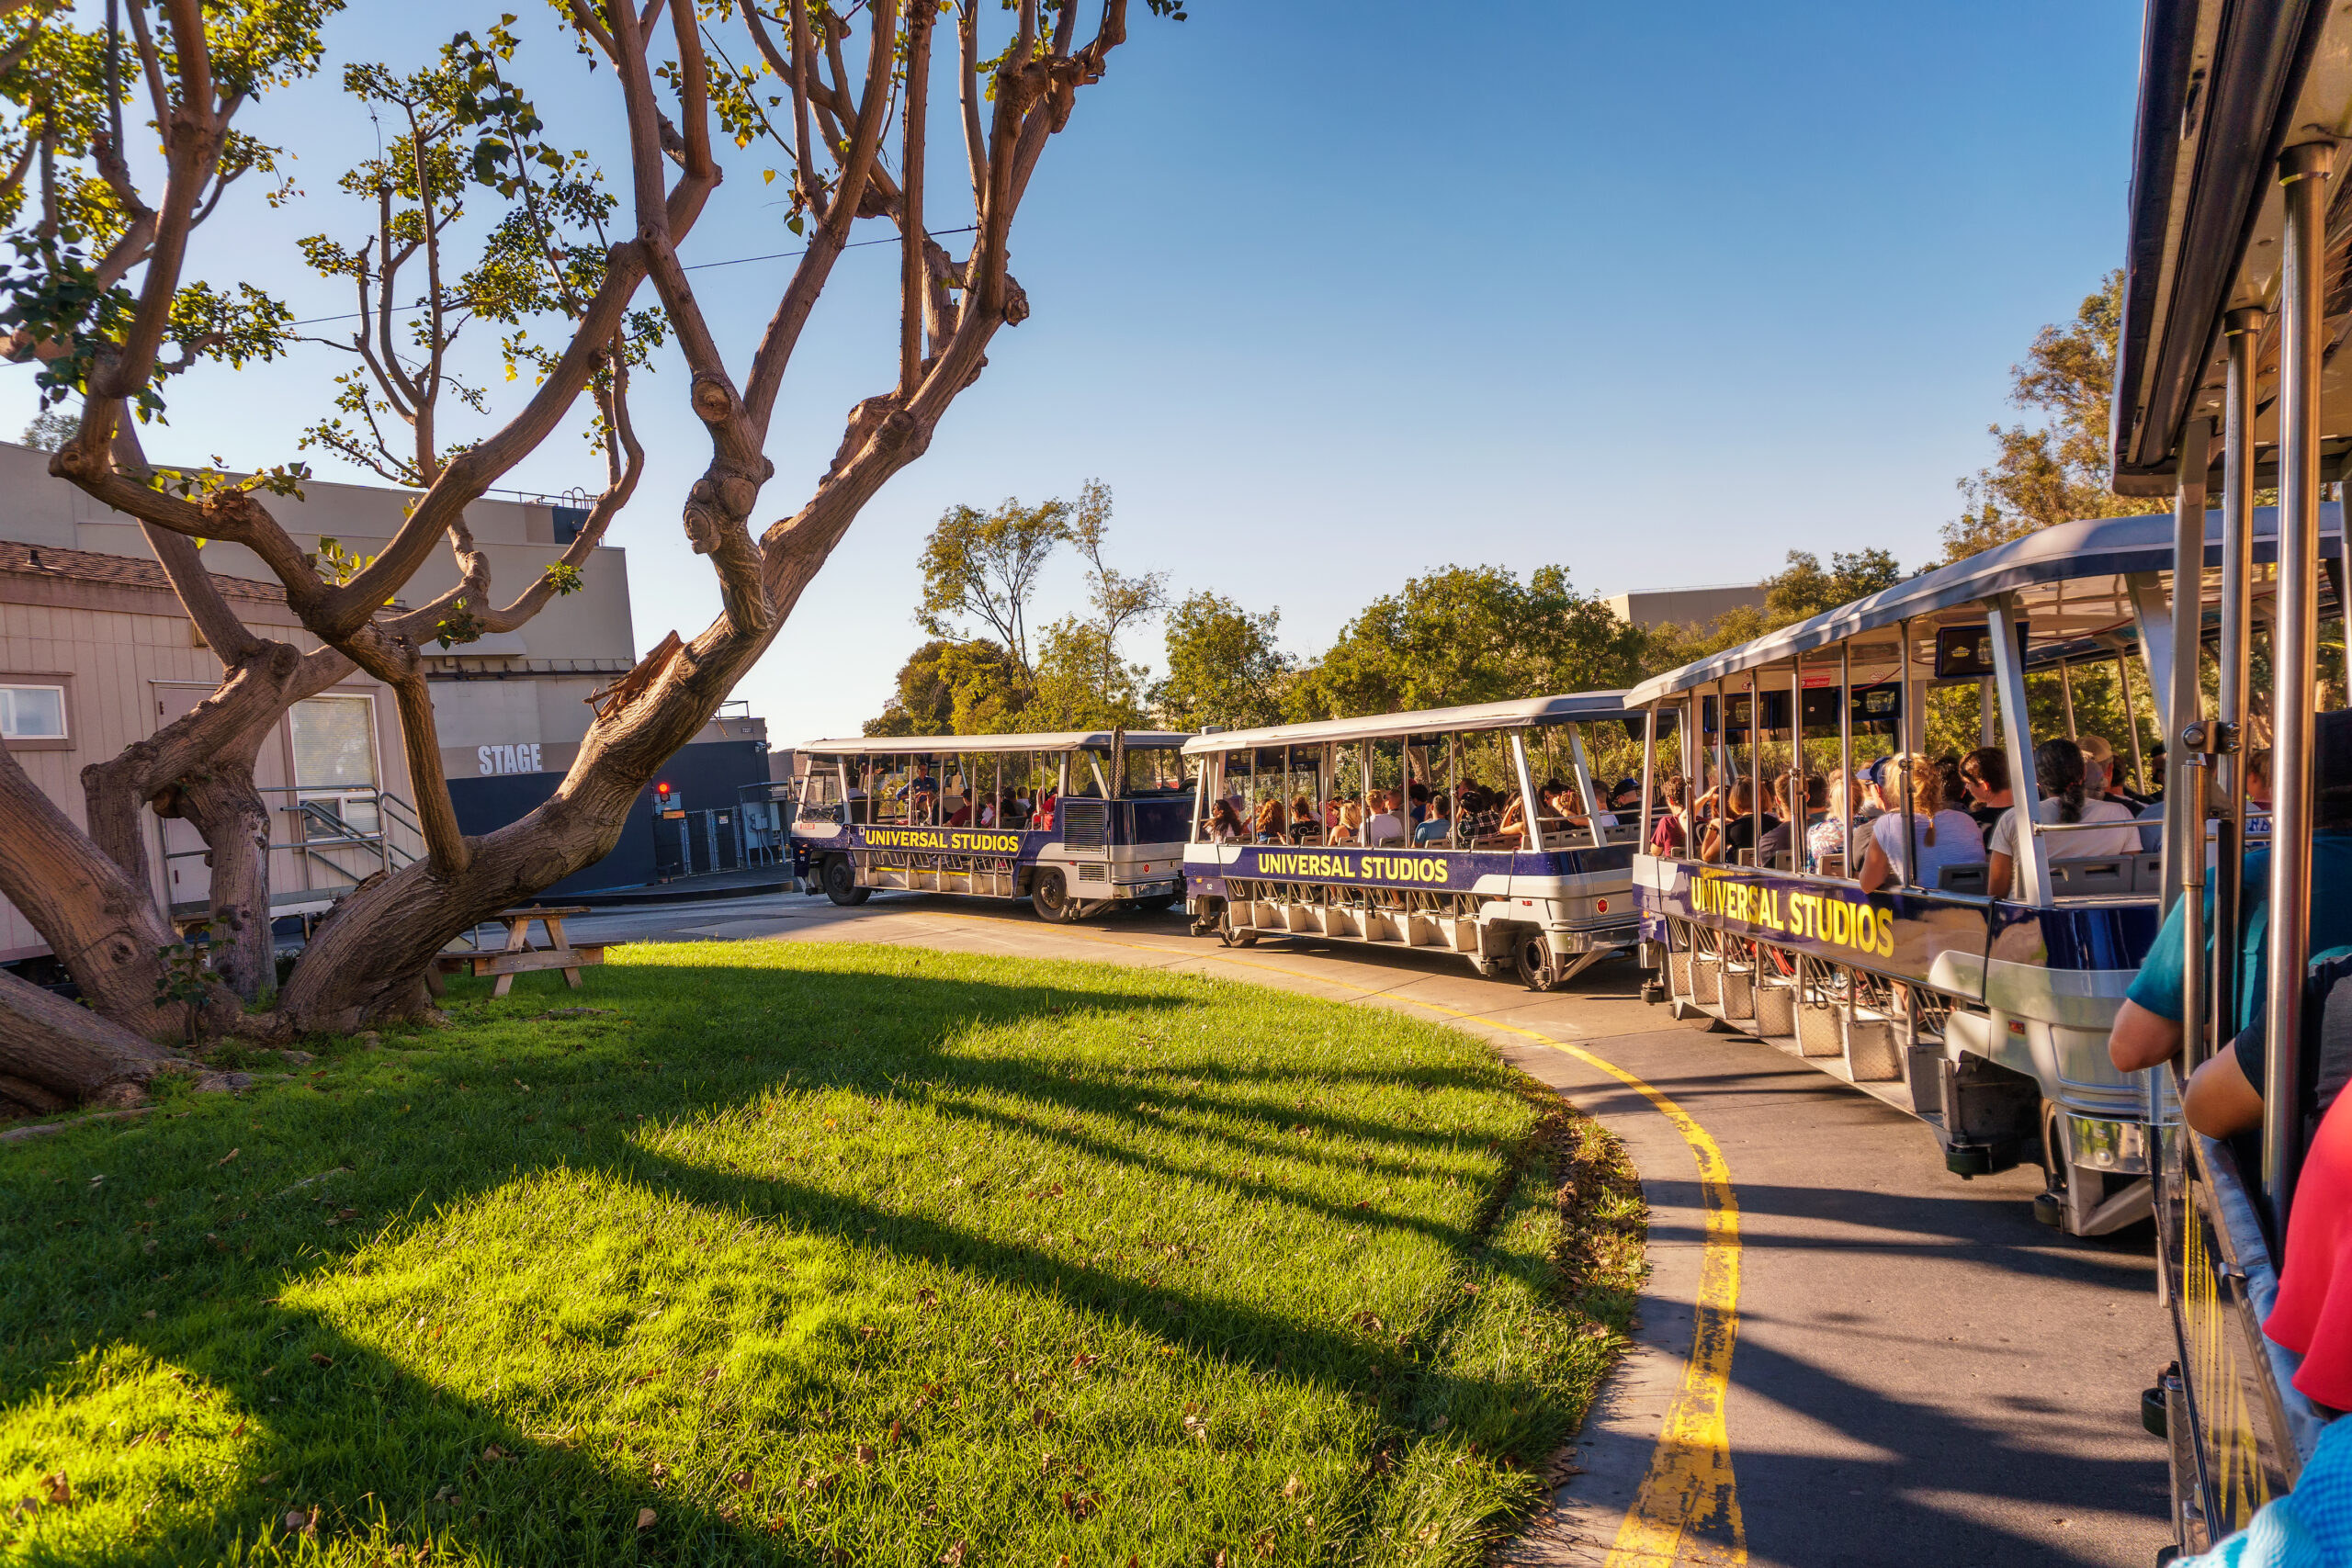 Die Rundfahrt mit der Straßenbahn in den Universal Studios ist eine der Hauptattraktionen des Themenparks.